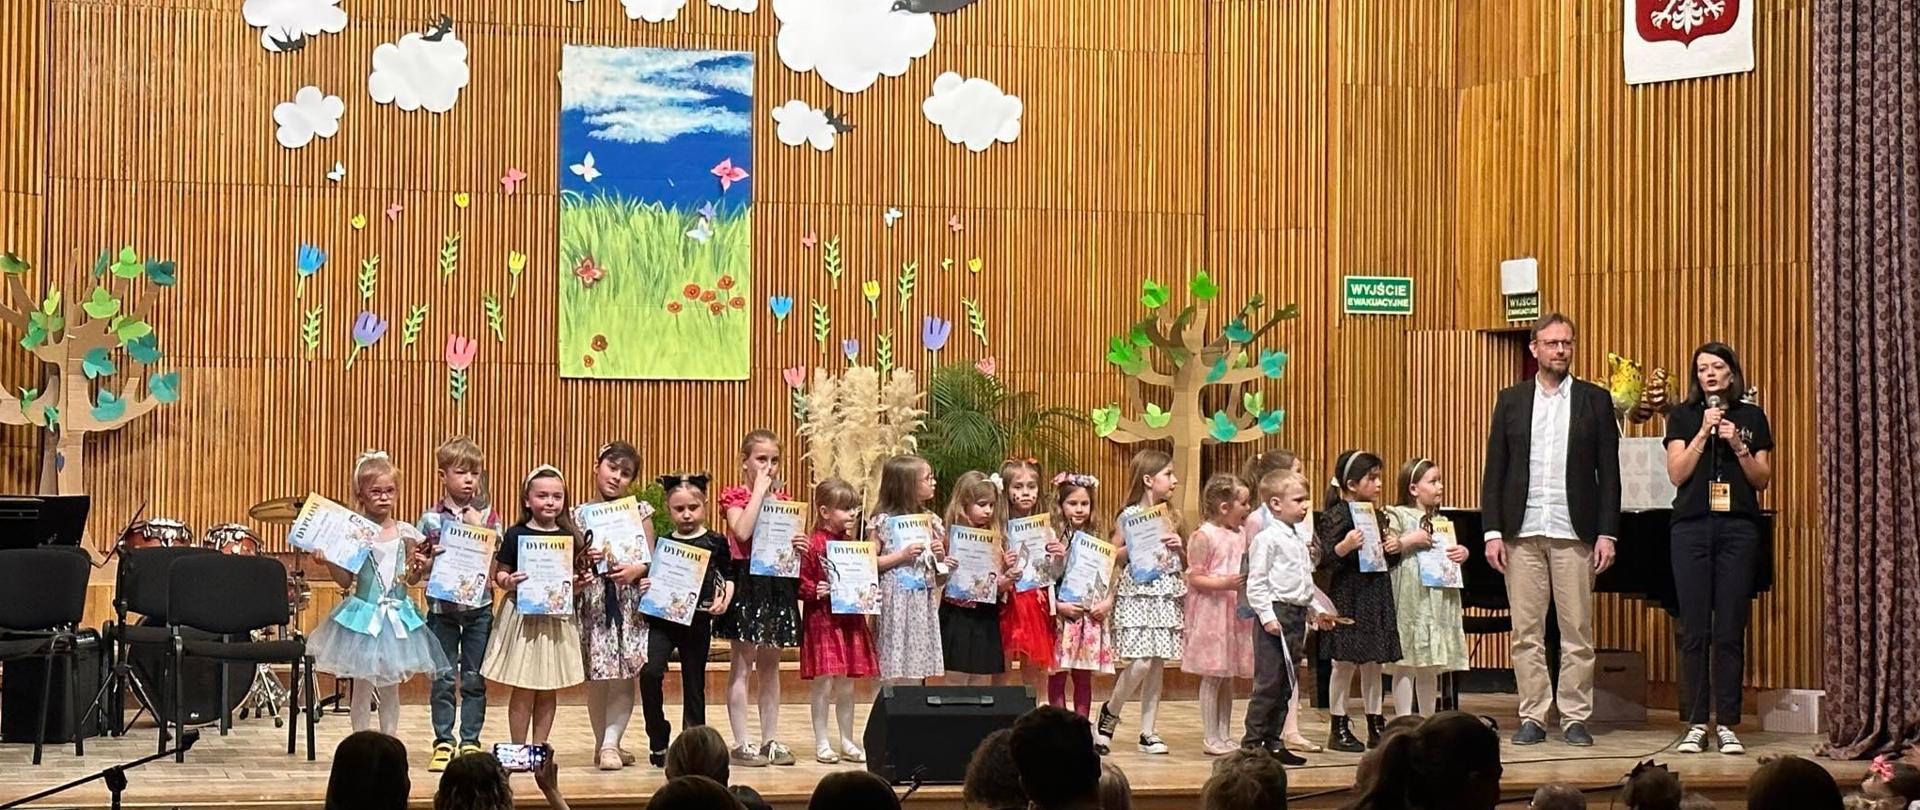 Widok na scenę sali koncertowej ZSM w Krośnie, na scenie kilkanaścioro dzieci oraz dwoje dorosłych. Dzieci trzymają w rękach dyplomy i statuetki, które otrzymały na rozdaniu nagród.